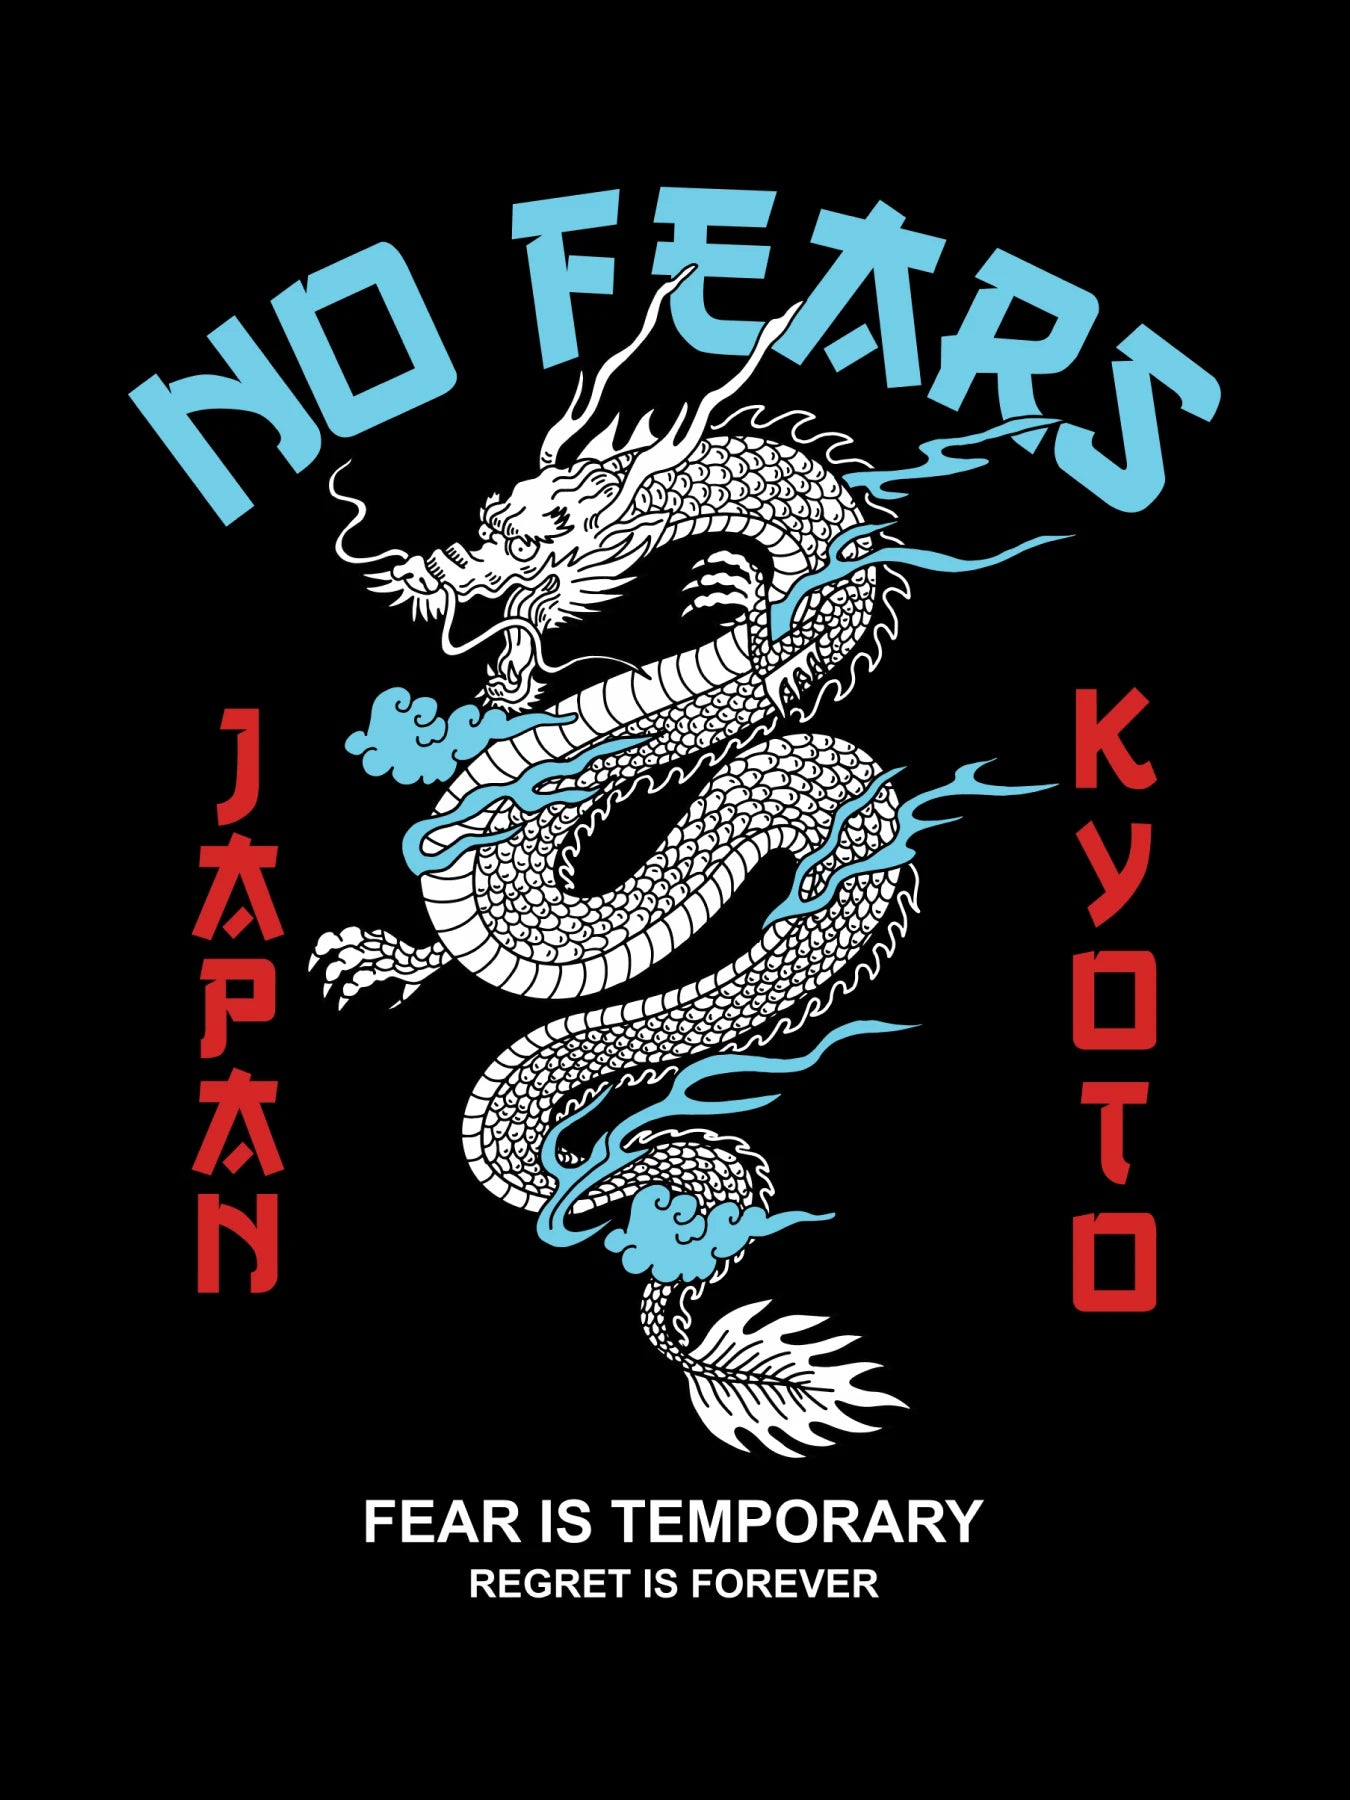 NO Fears